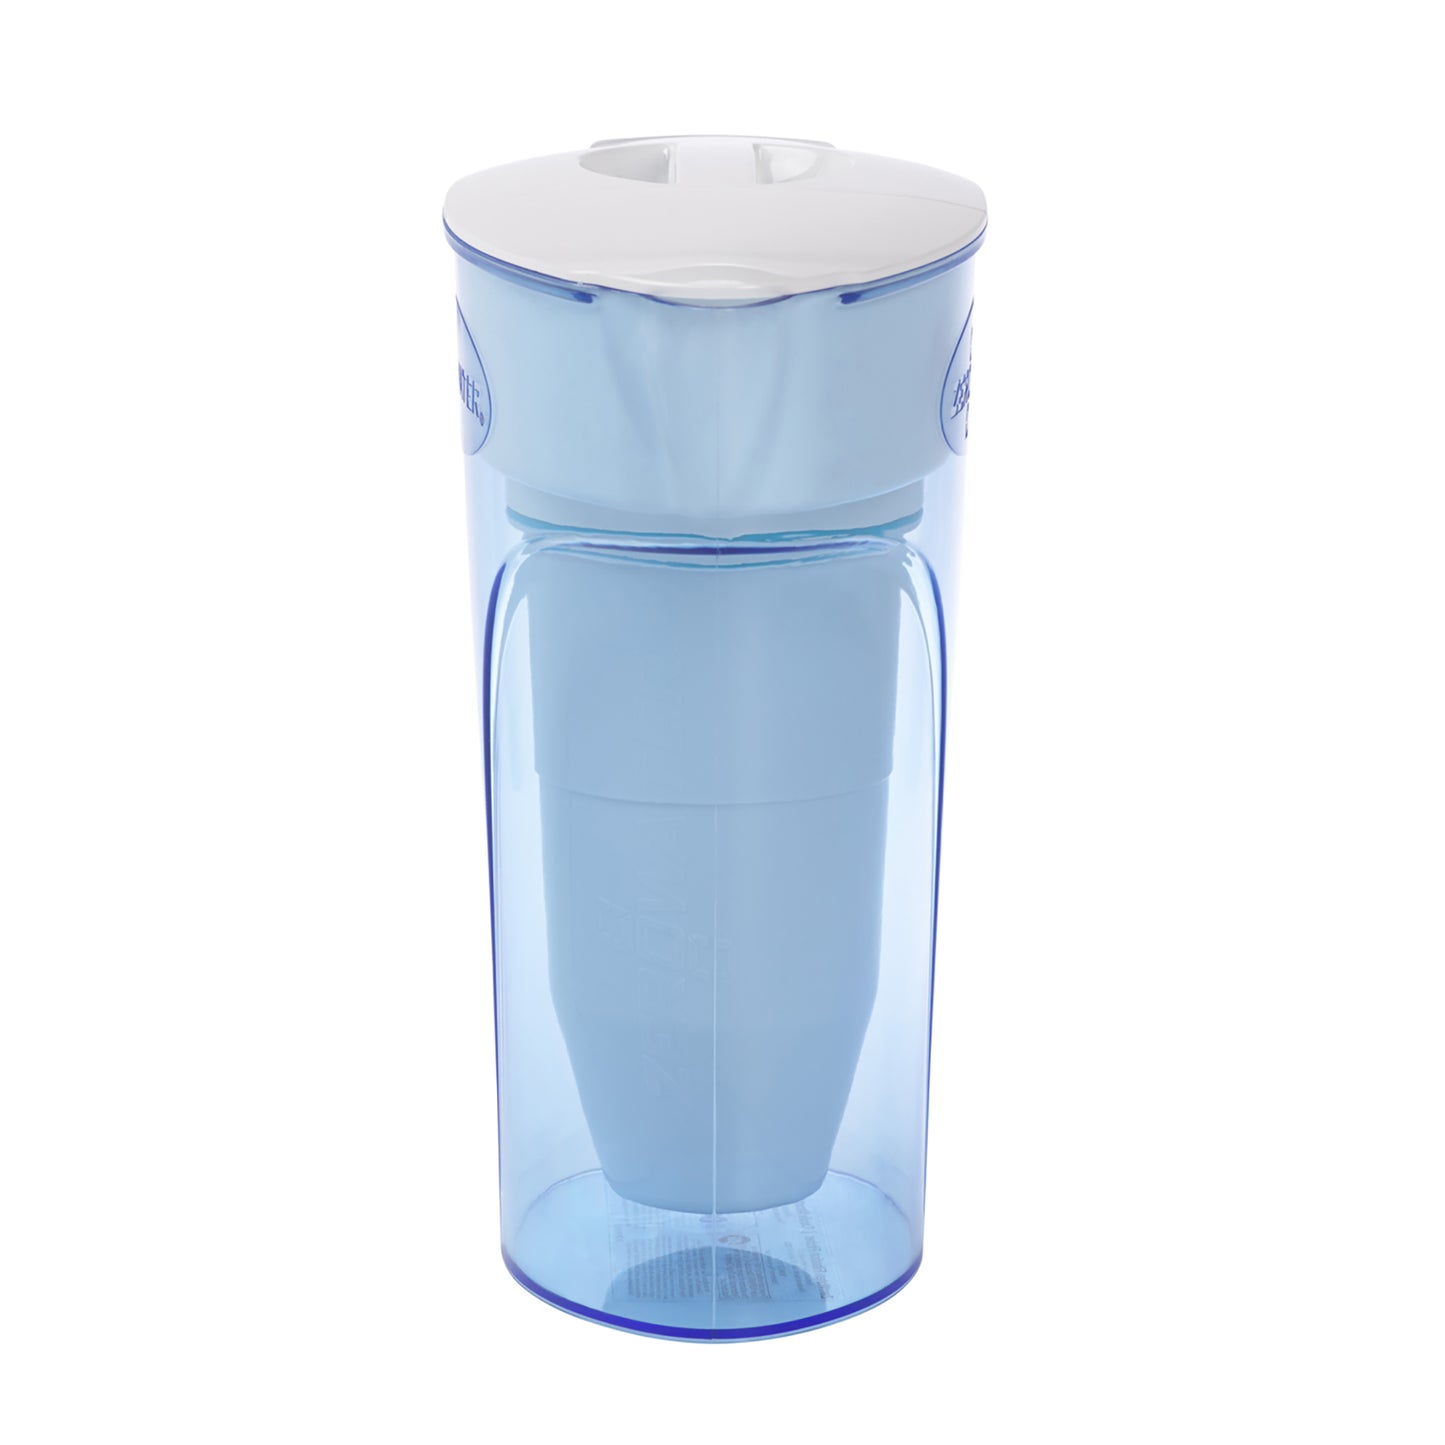 Zestaw Combi: dzbanek na wodę o pojemności 1,4 litra wraz z pojemnikiem na wodę 2 filtry | Combibox dzbanek na 6 filiżanek (1,4 litra) + 1 filtr